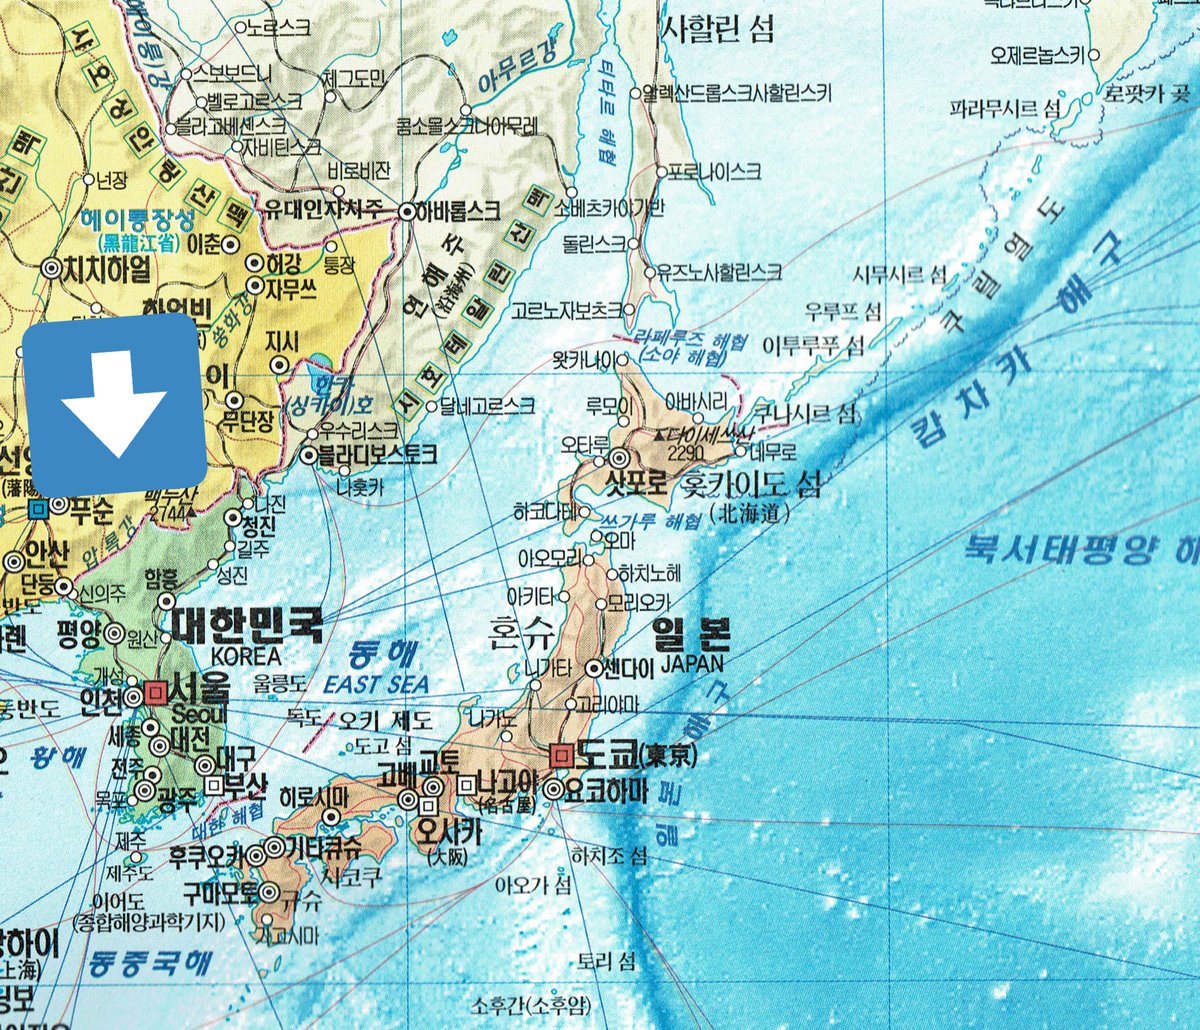 ちれぴ 地図の色でわかること こちらは韓国で購入した世界地図 北方領土はロシア領 日本海のことはeast Sea 東海と表記 北朝鮮は存在しない あくまで朝鮮半島には国家が１つしか存在しないという考えで 地図に現れている あと北朝鮮の地図